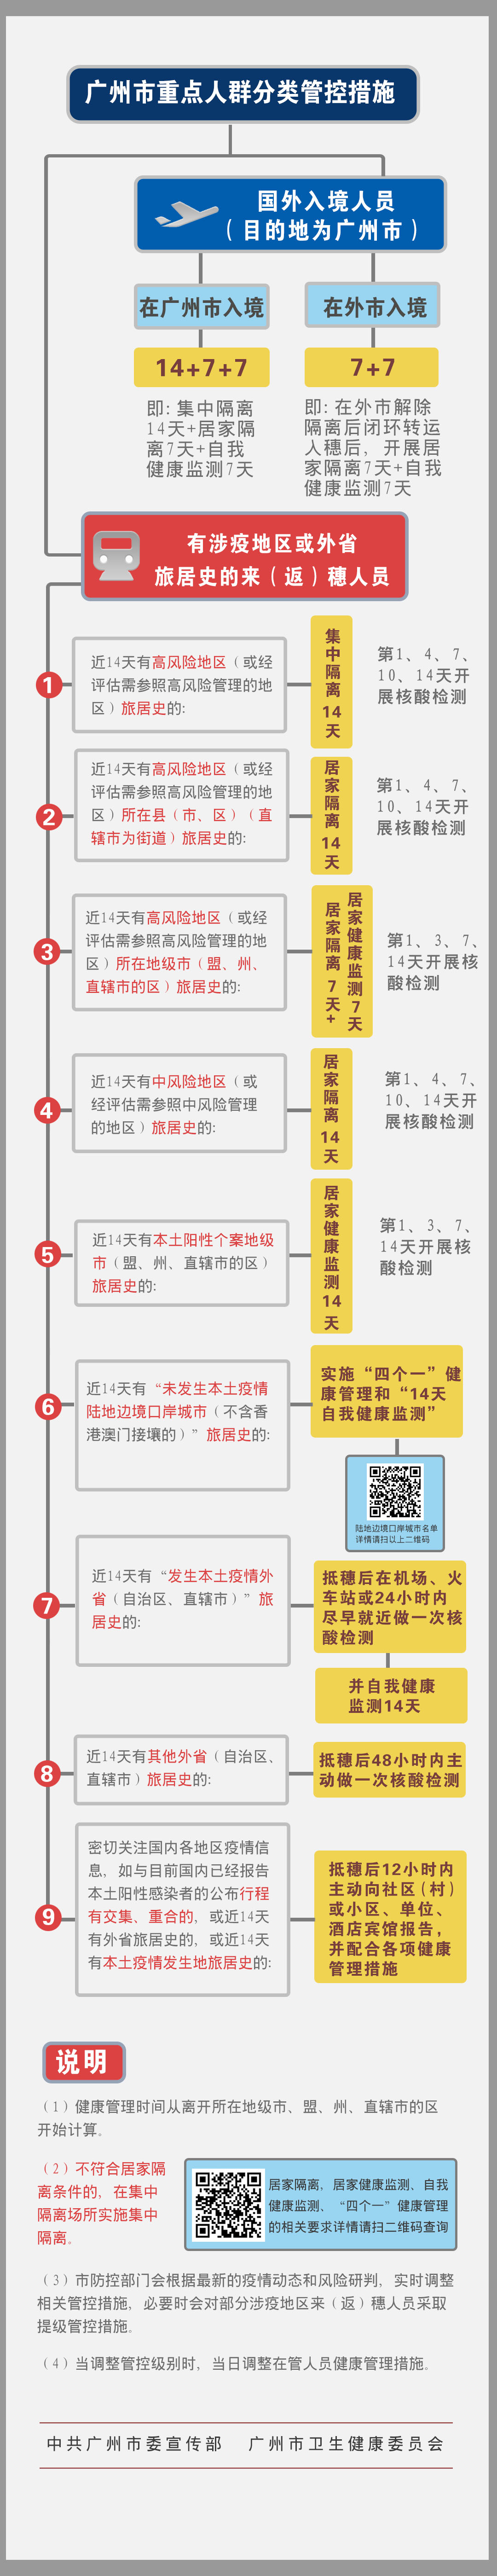 1、广州市重点人群分类管控措施图.jpg